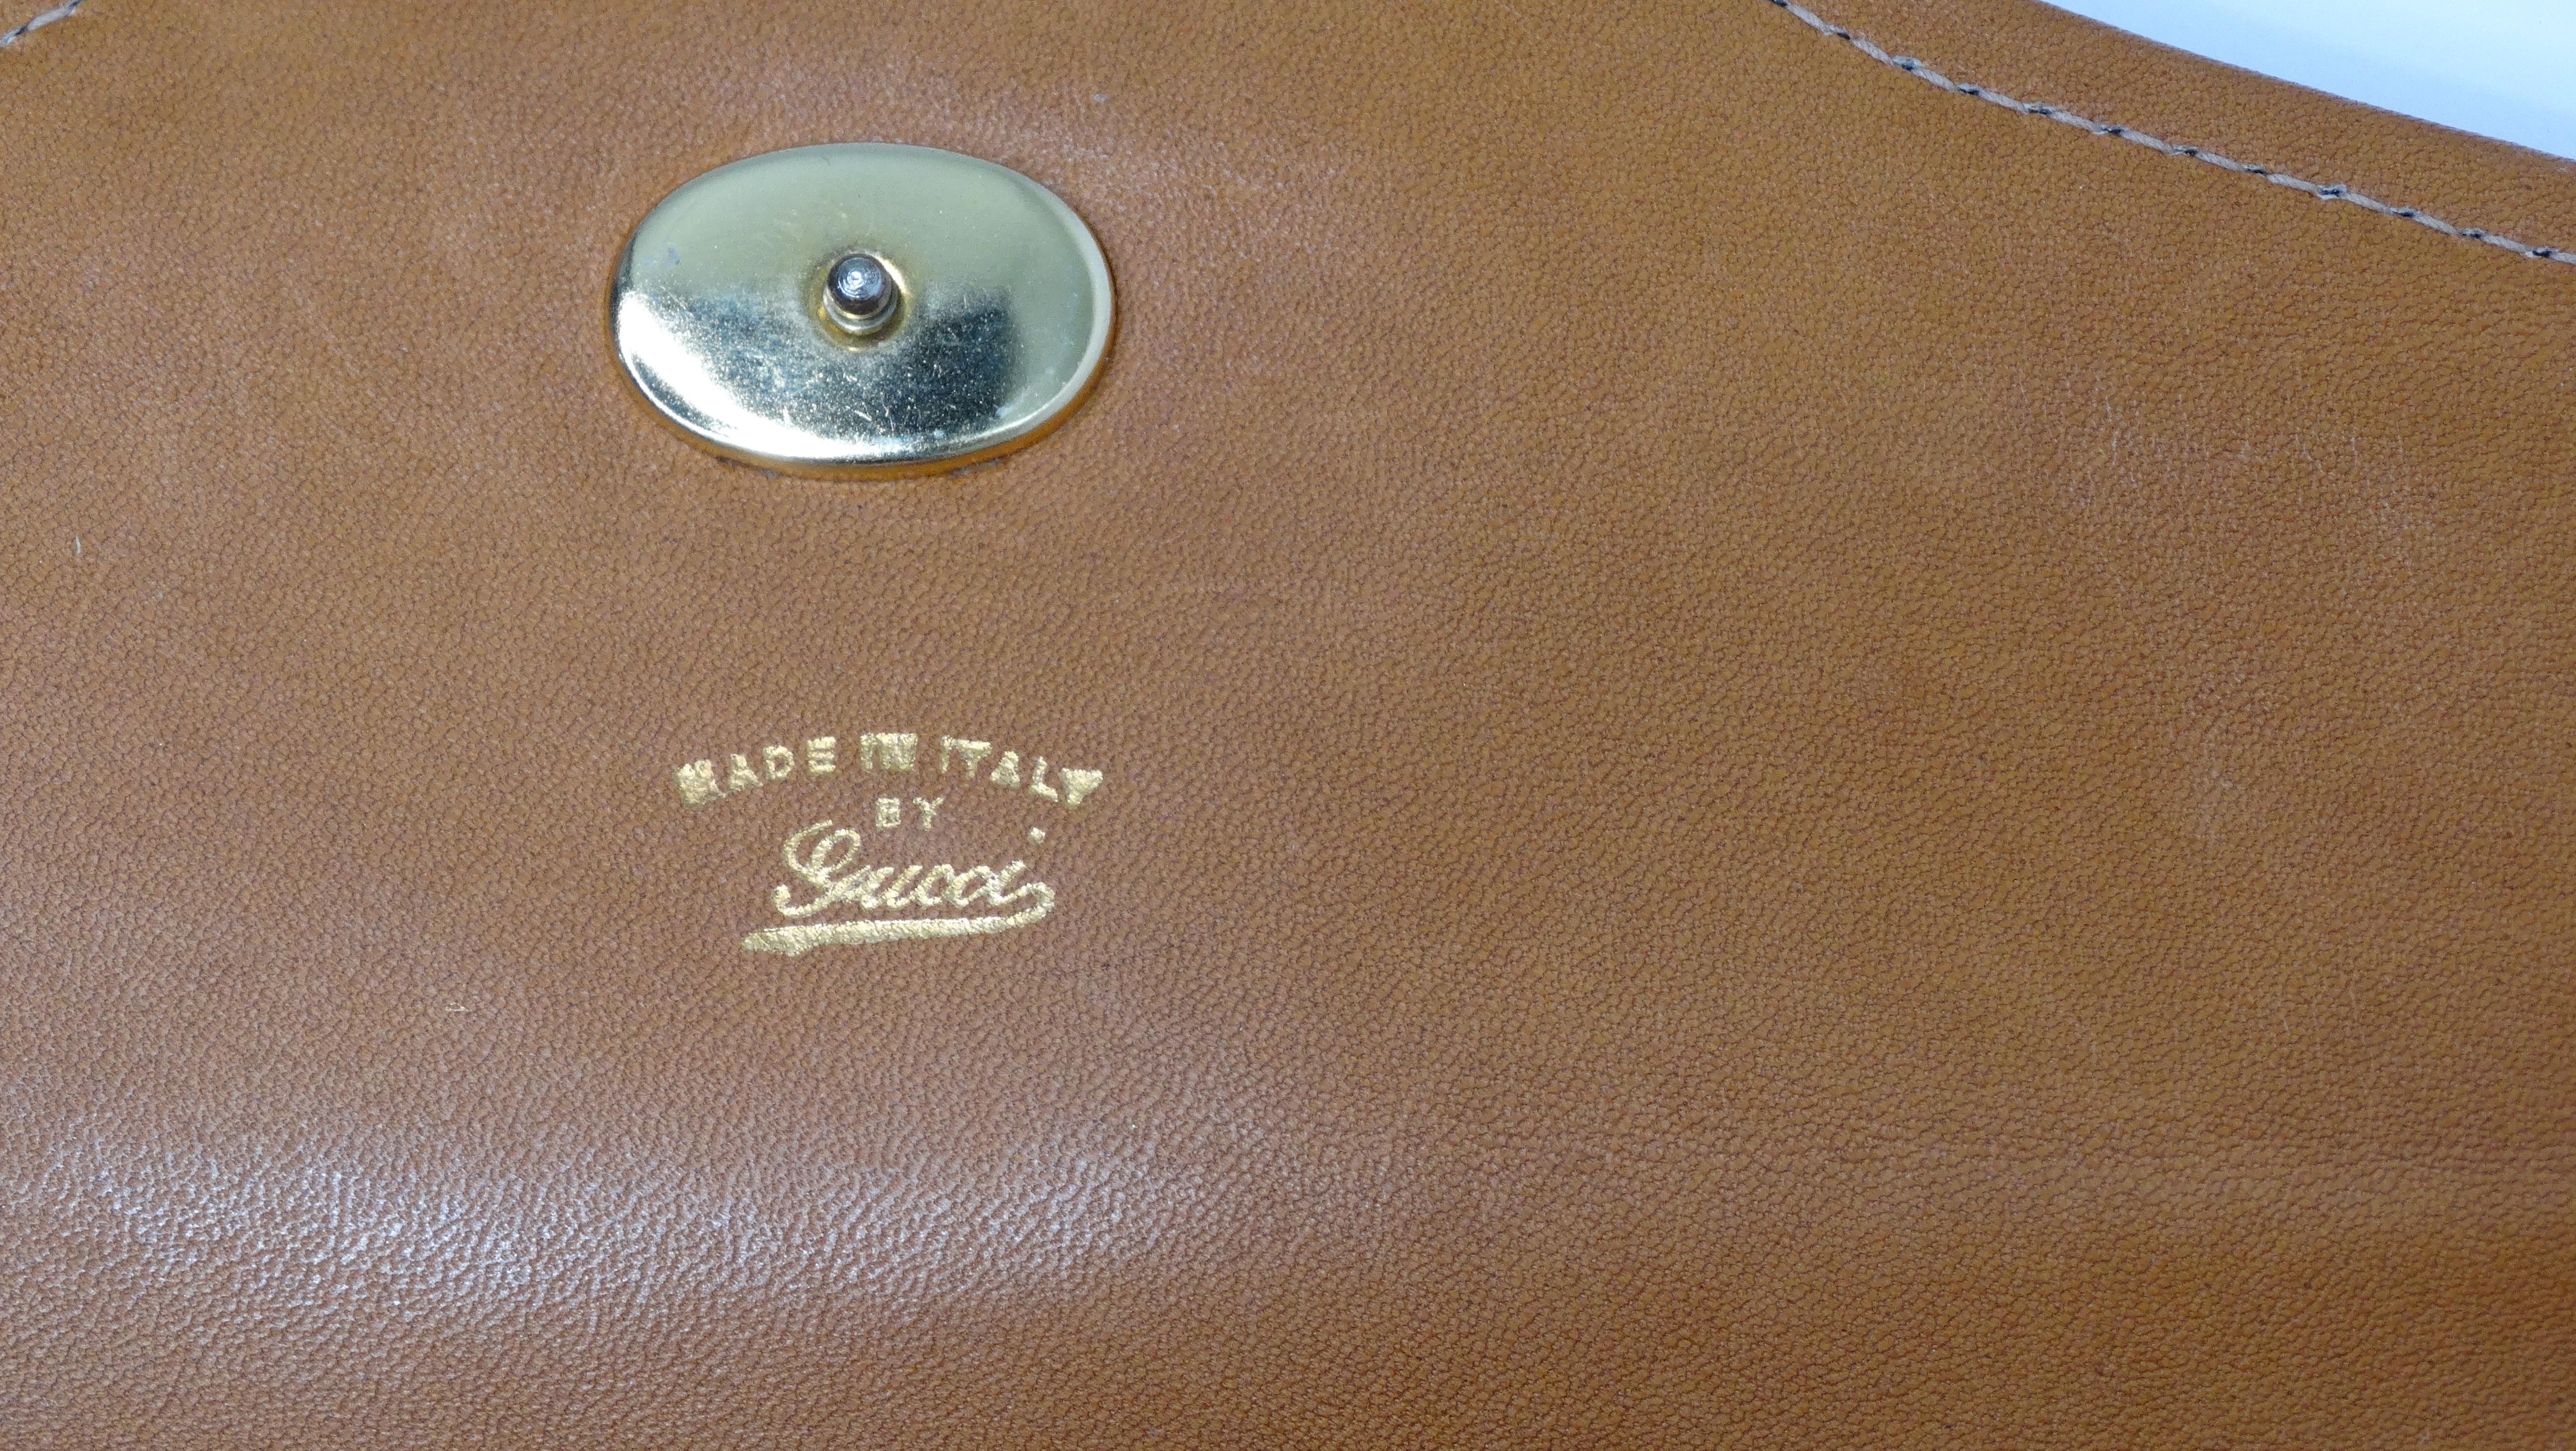 Gucci Striped Monogram Vintage Handbag For Sale 7